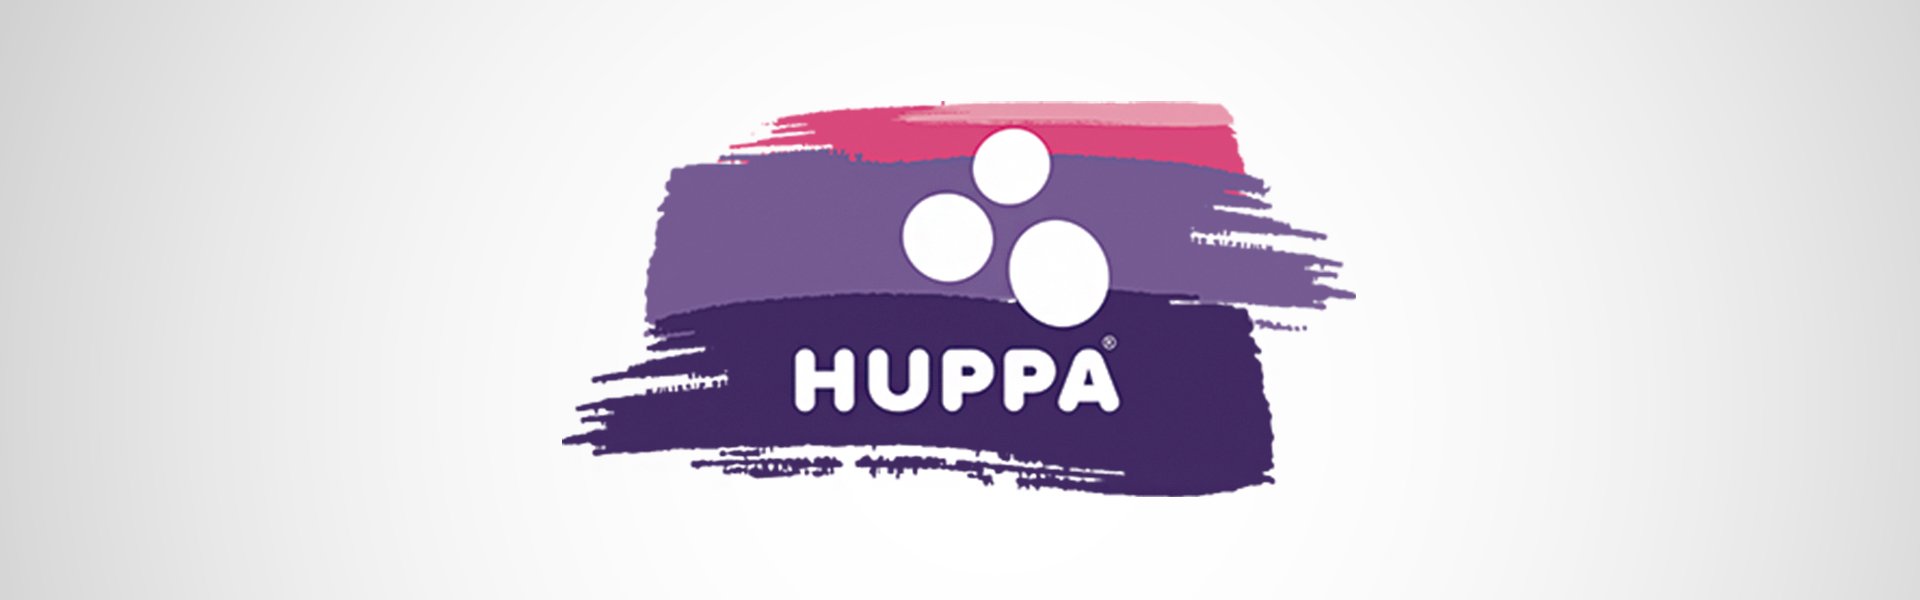 Huppa vaikiškos kumštinės pirštinės RON, violetinės spalvos Huppa